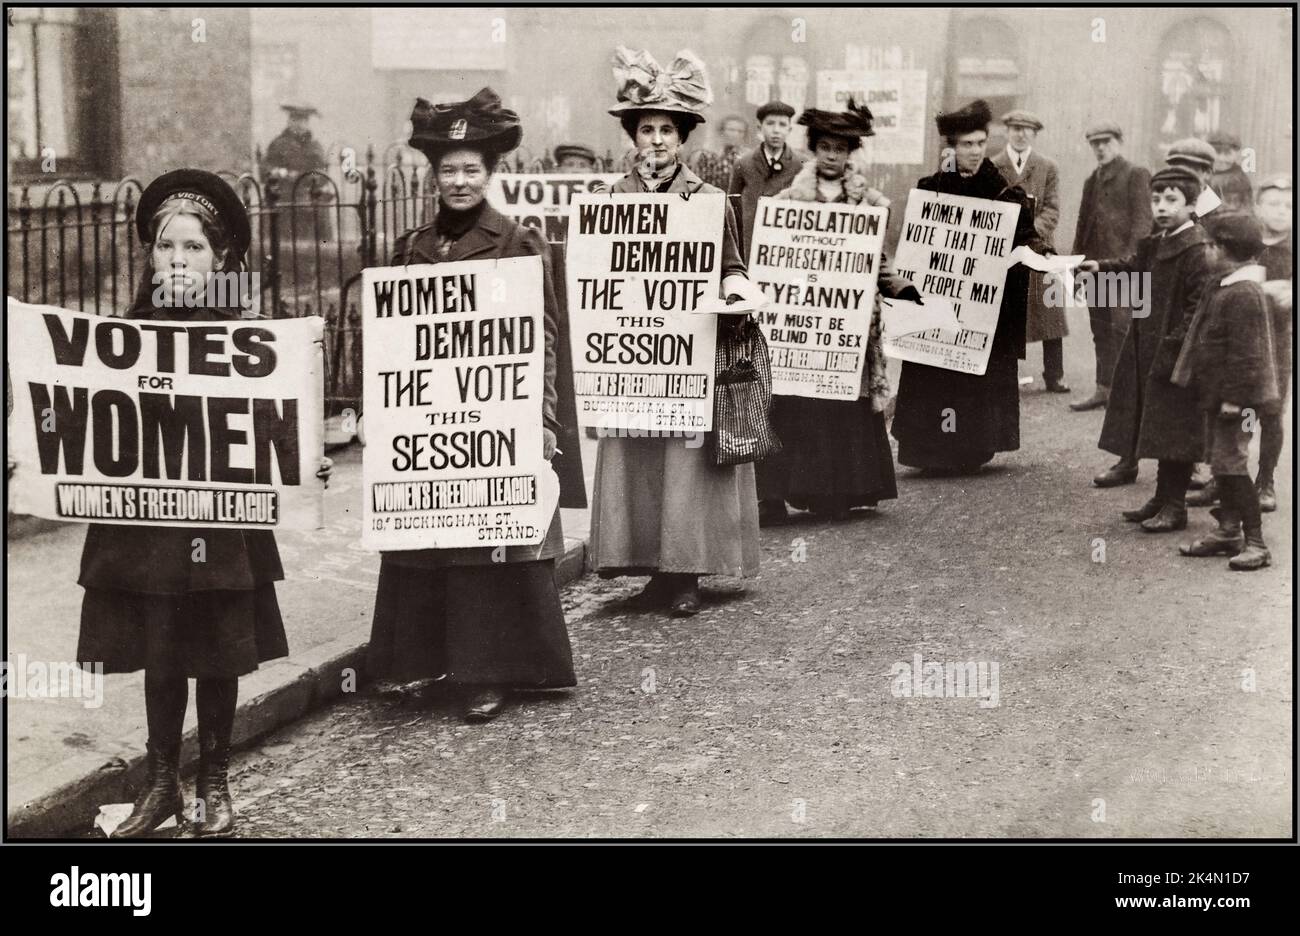 1900s mouvement des suffragettes les femmes avec des bannières réclamant «votes pour les femmes» Grande-Bretagne suffrage manifestation de rue avec des bannières et de jeunes enfants interagissant et aidant avec des manifestants et des suffragettes UK ‘ LES FEMMES DEMANDENT LE VOTE’ ''Women'Freedom League' Banque D'Images